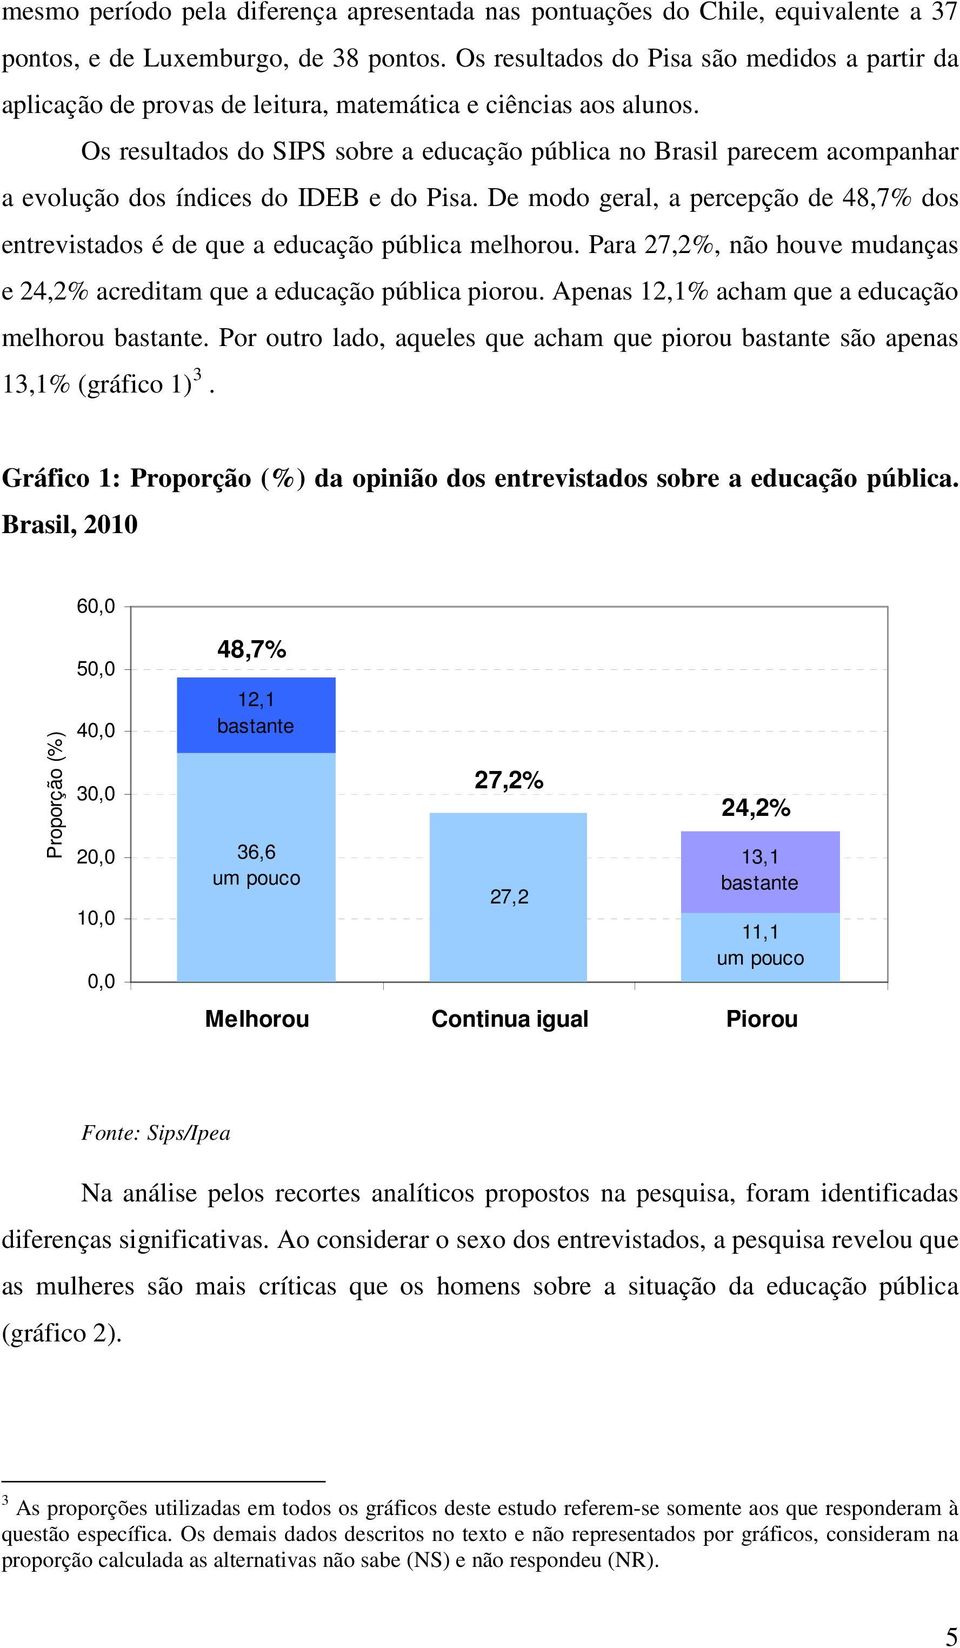 Os resultados do SIPS sobre a educação pública no Brasil parecem acompanhar a evolução dos índices do IDEB e do Pisa.